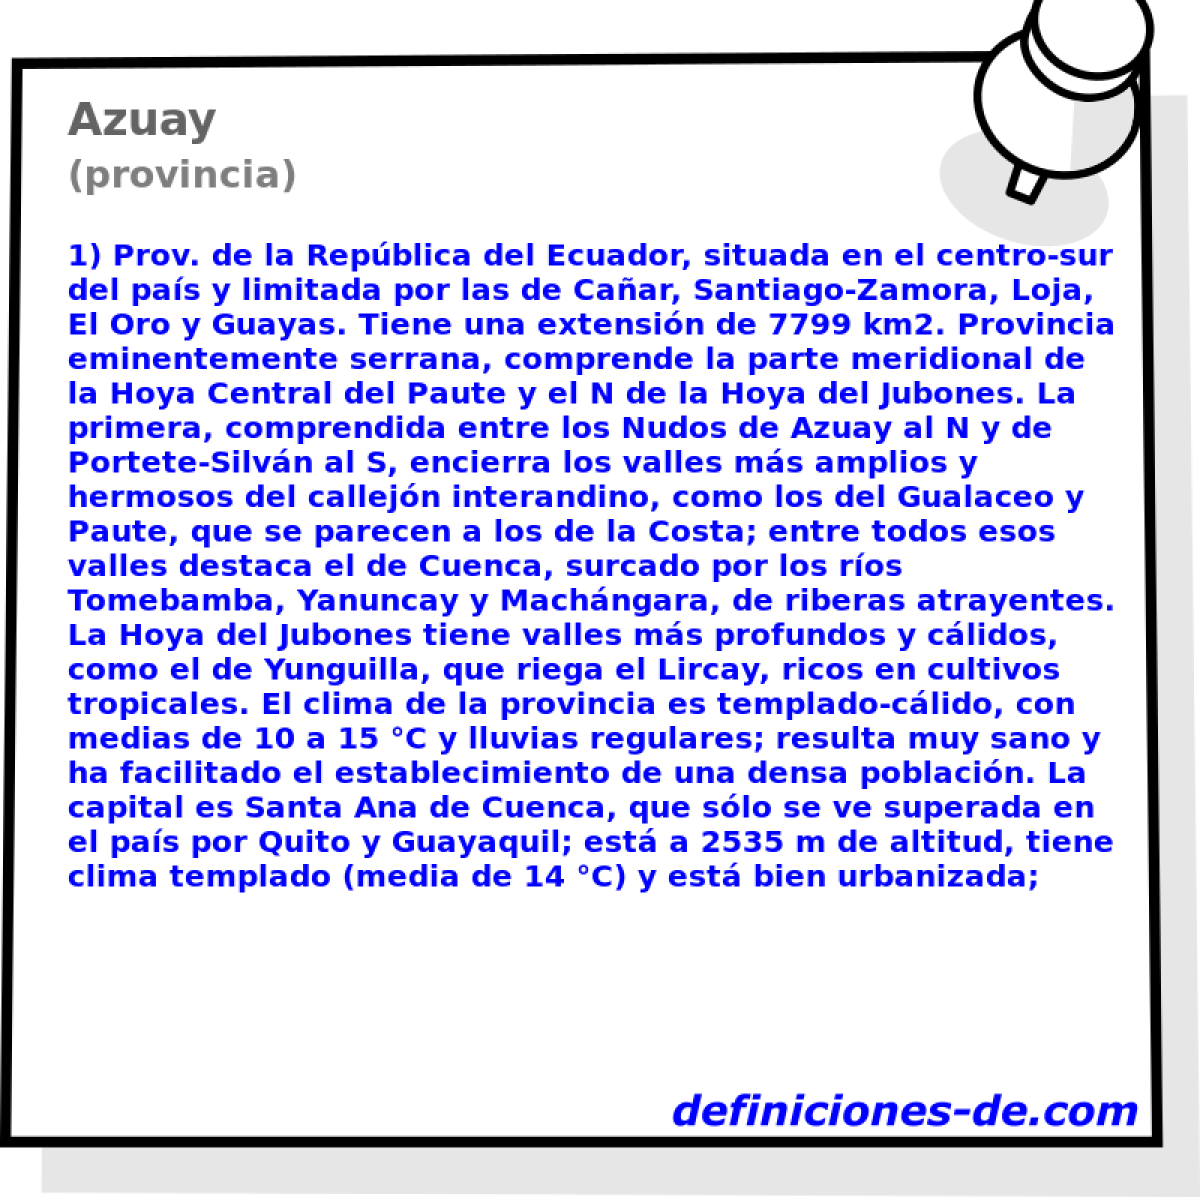 Azuay (provincia)